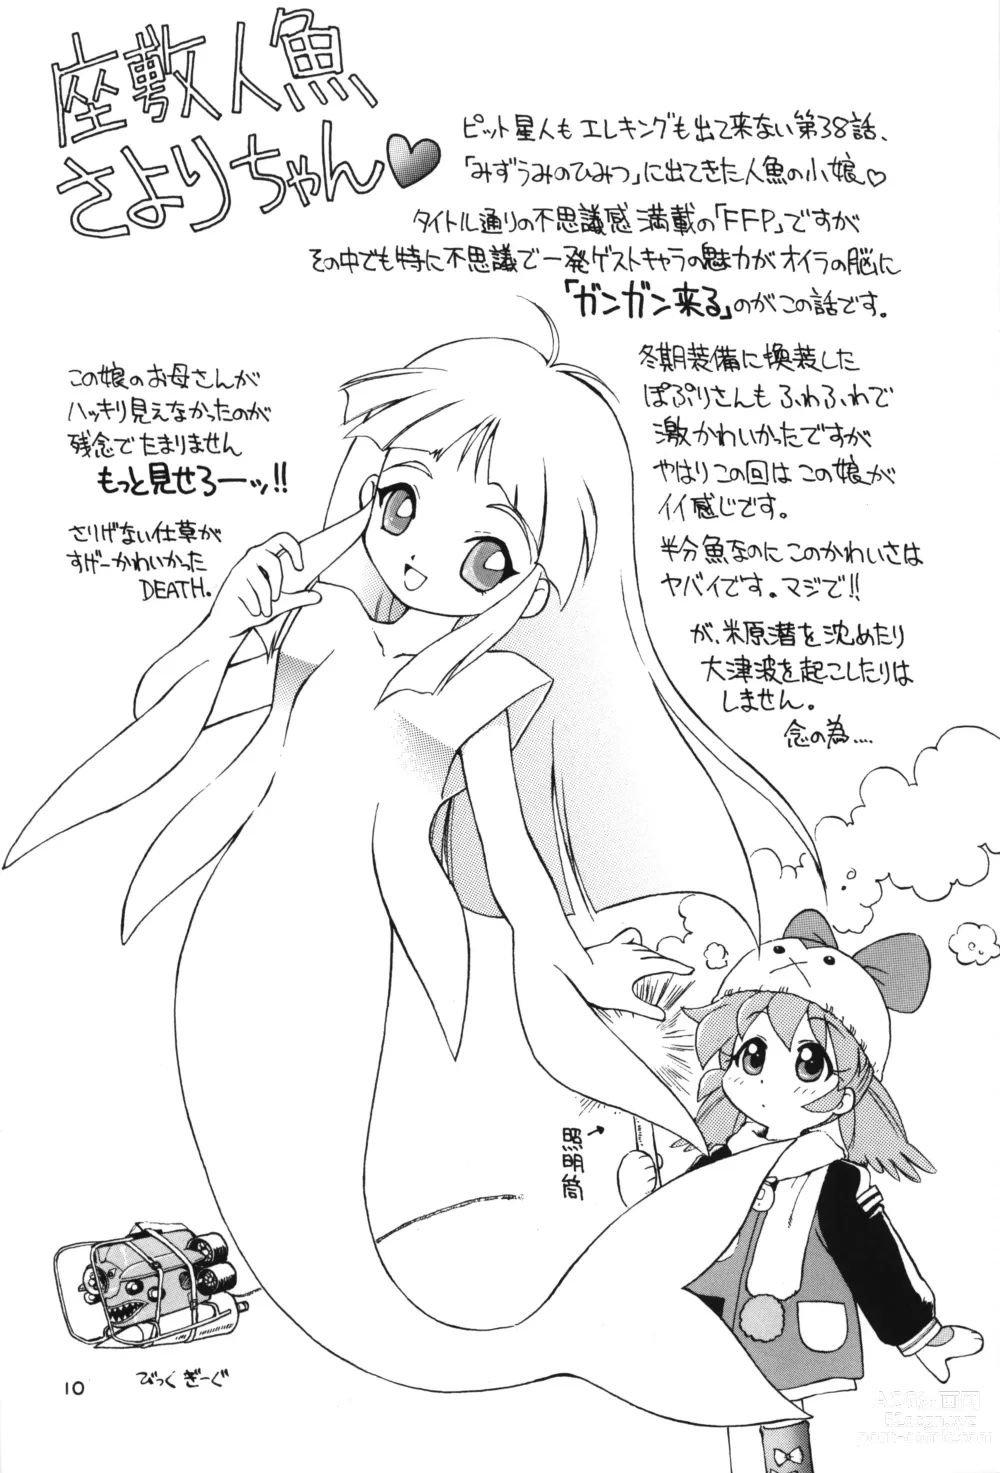 Page 9 of doujinshi Nishino-san Deban desu!